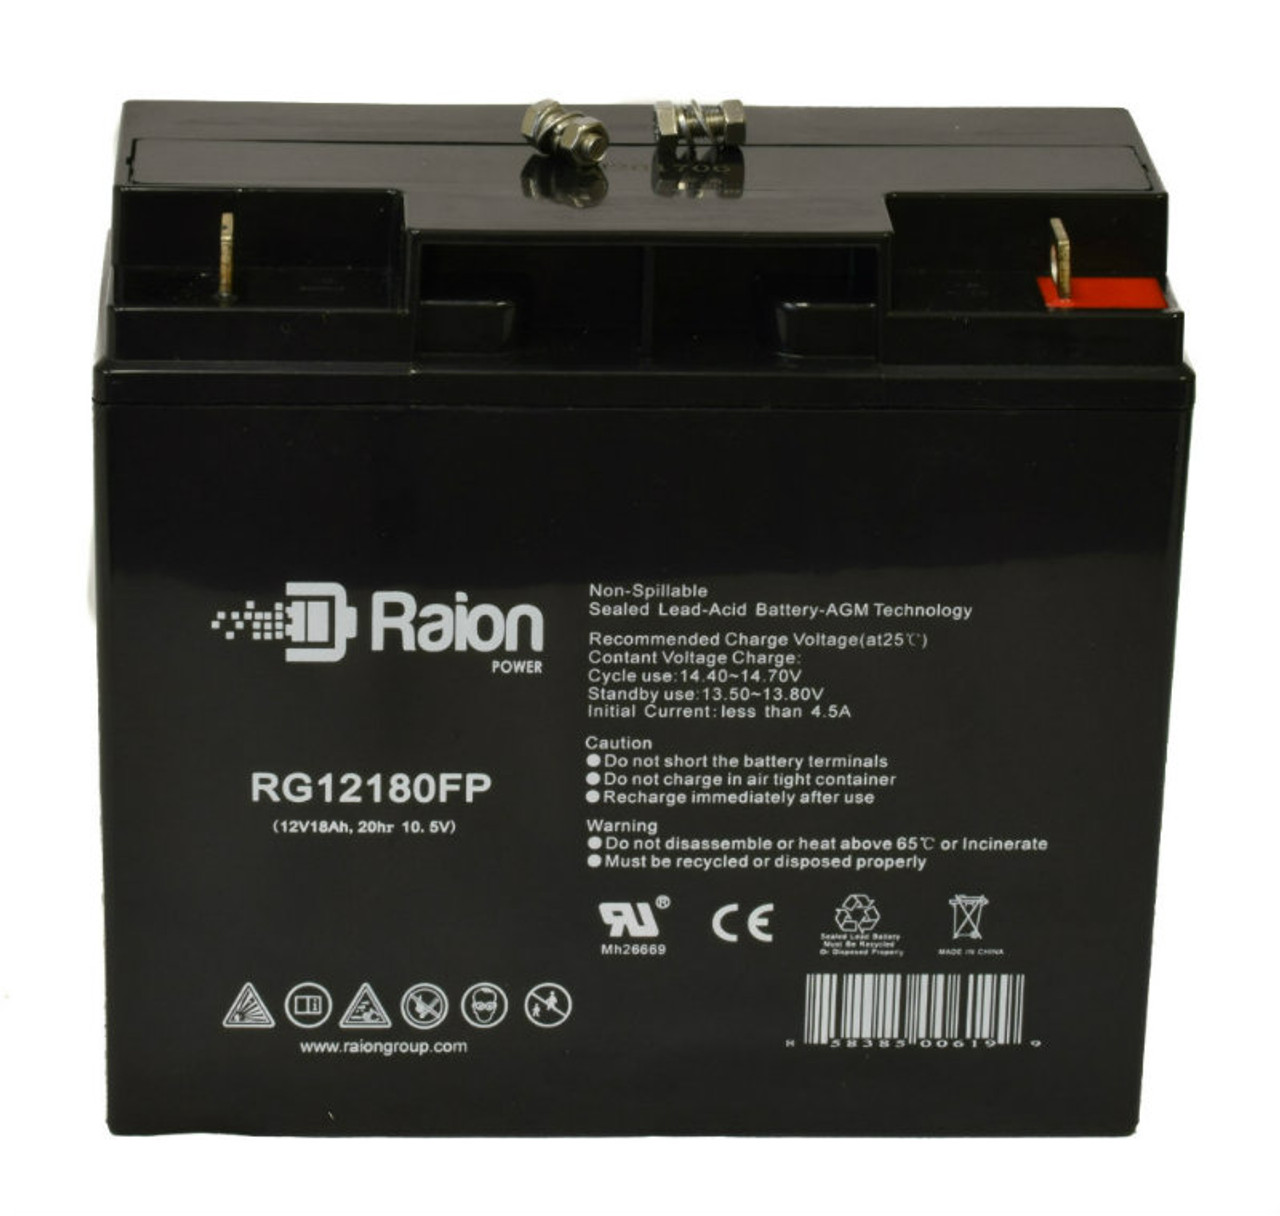 Raion Power RG12180FP 12V 18Ah Lead Acid Battery for Daymak Daytona Deluxe